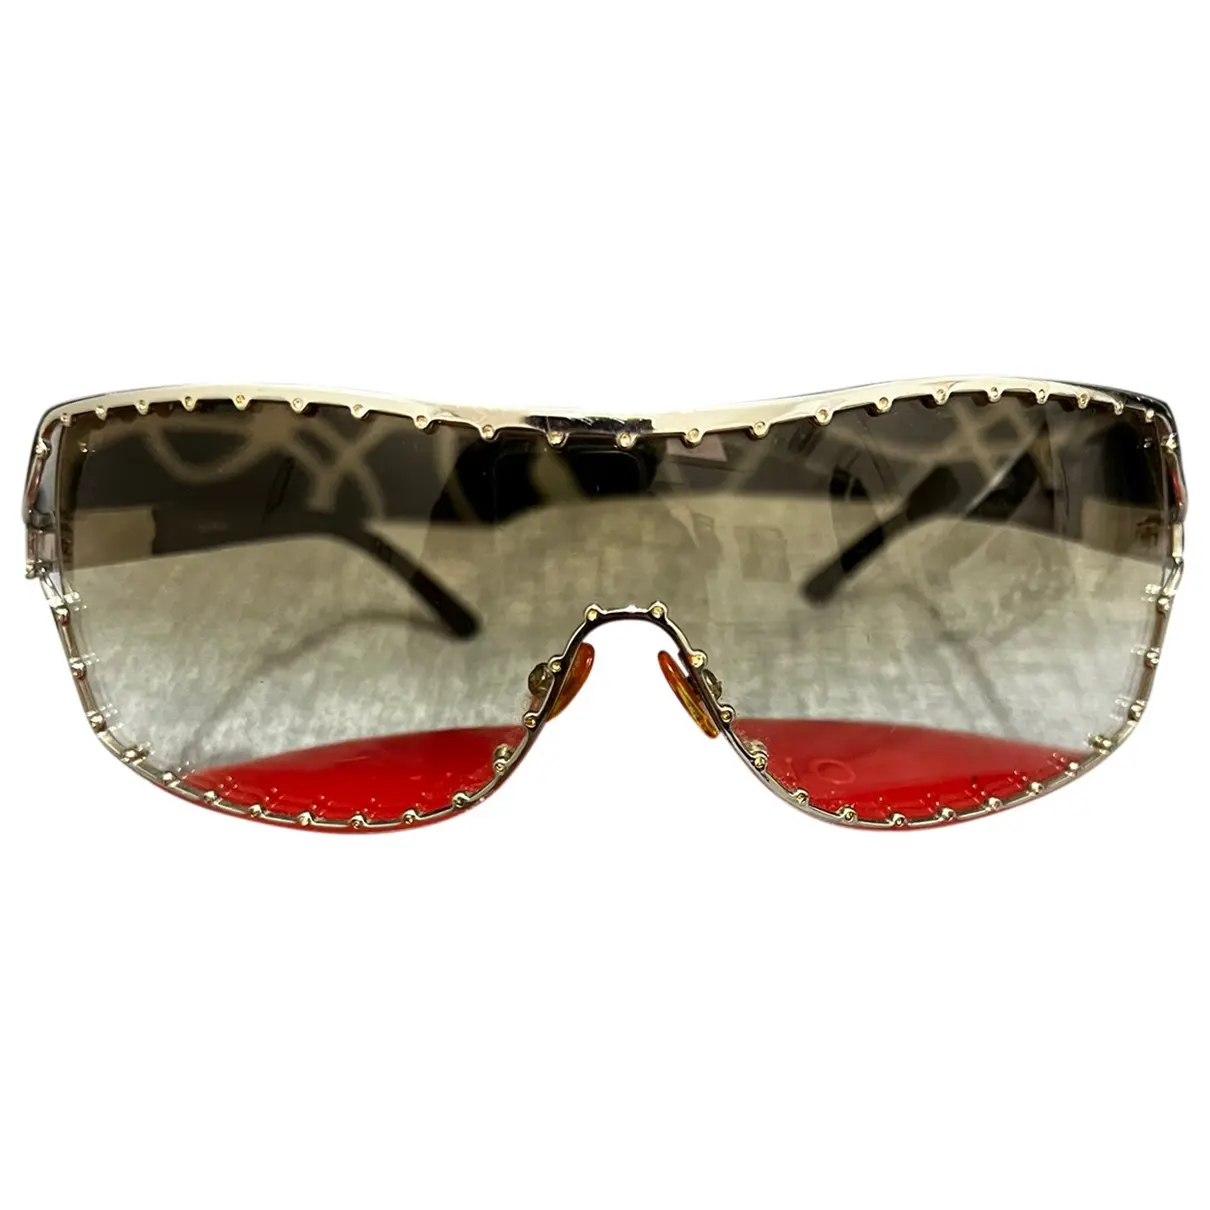 Aviator sunglasses Valentino Garavani - Vintage